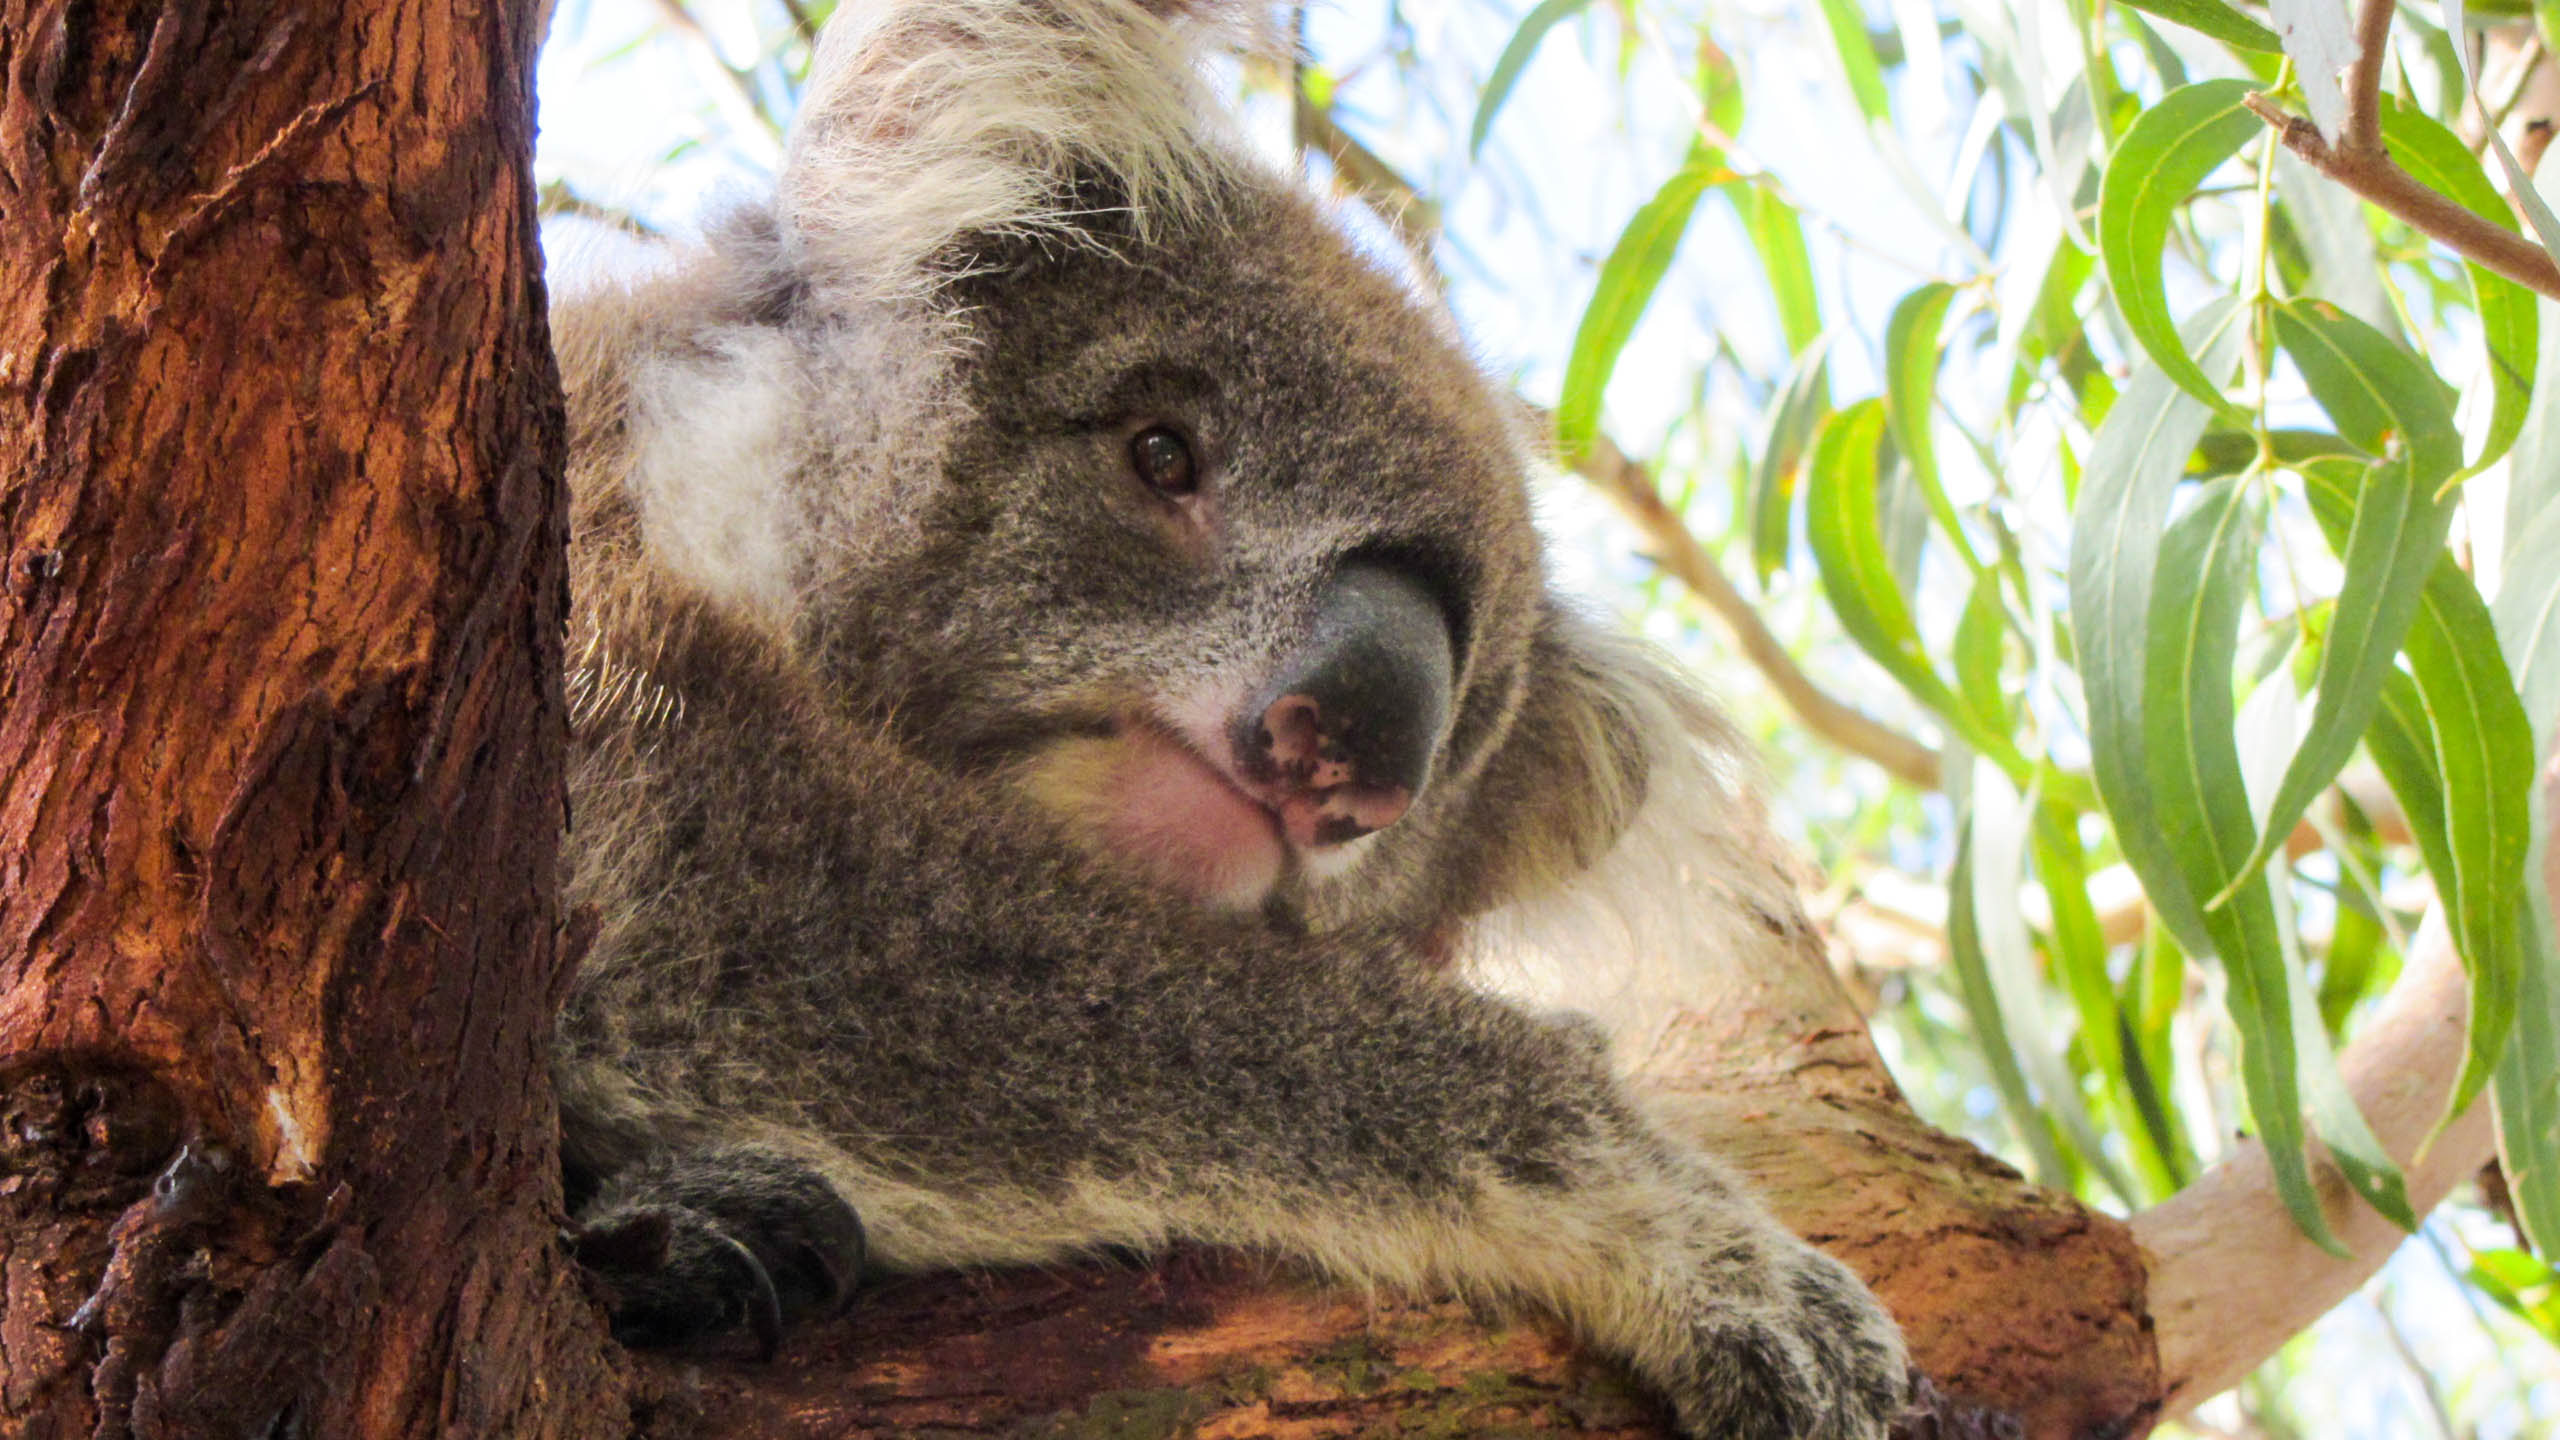 Koala on tree branch in Australia